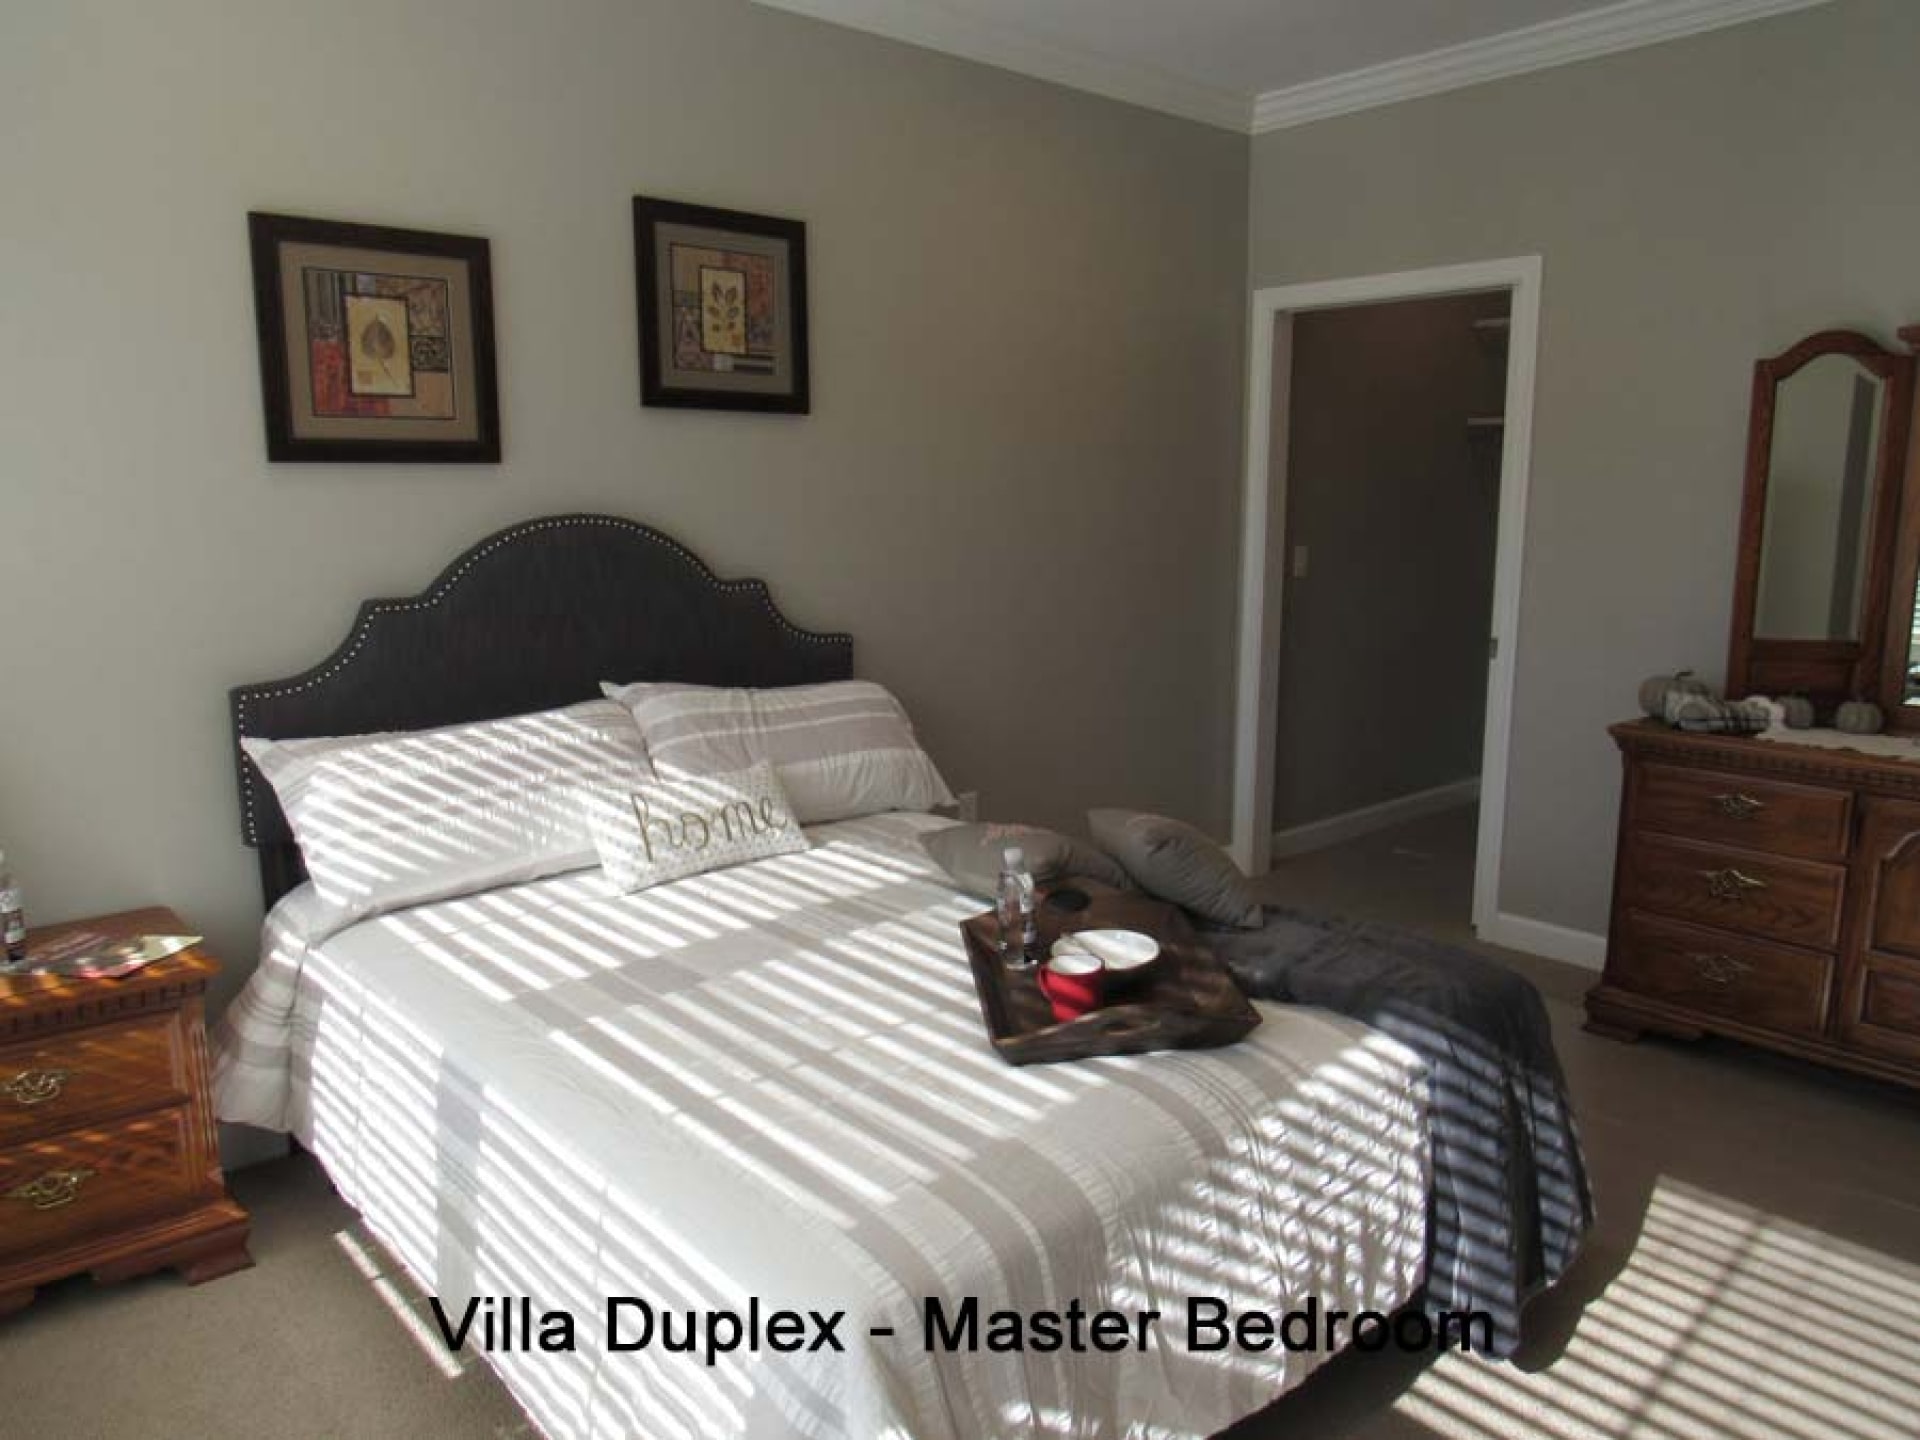 Villa-Duplex_39_Master-Bedroom-2-0001.jpg